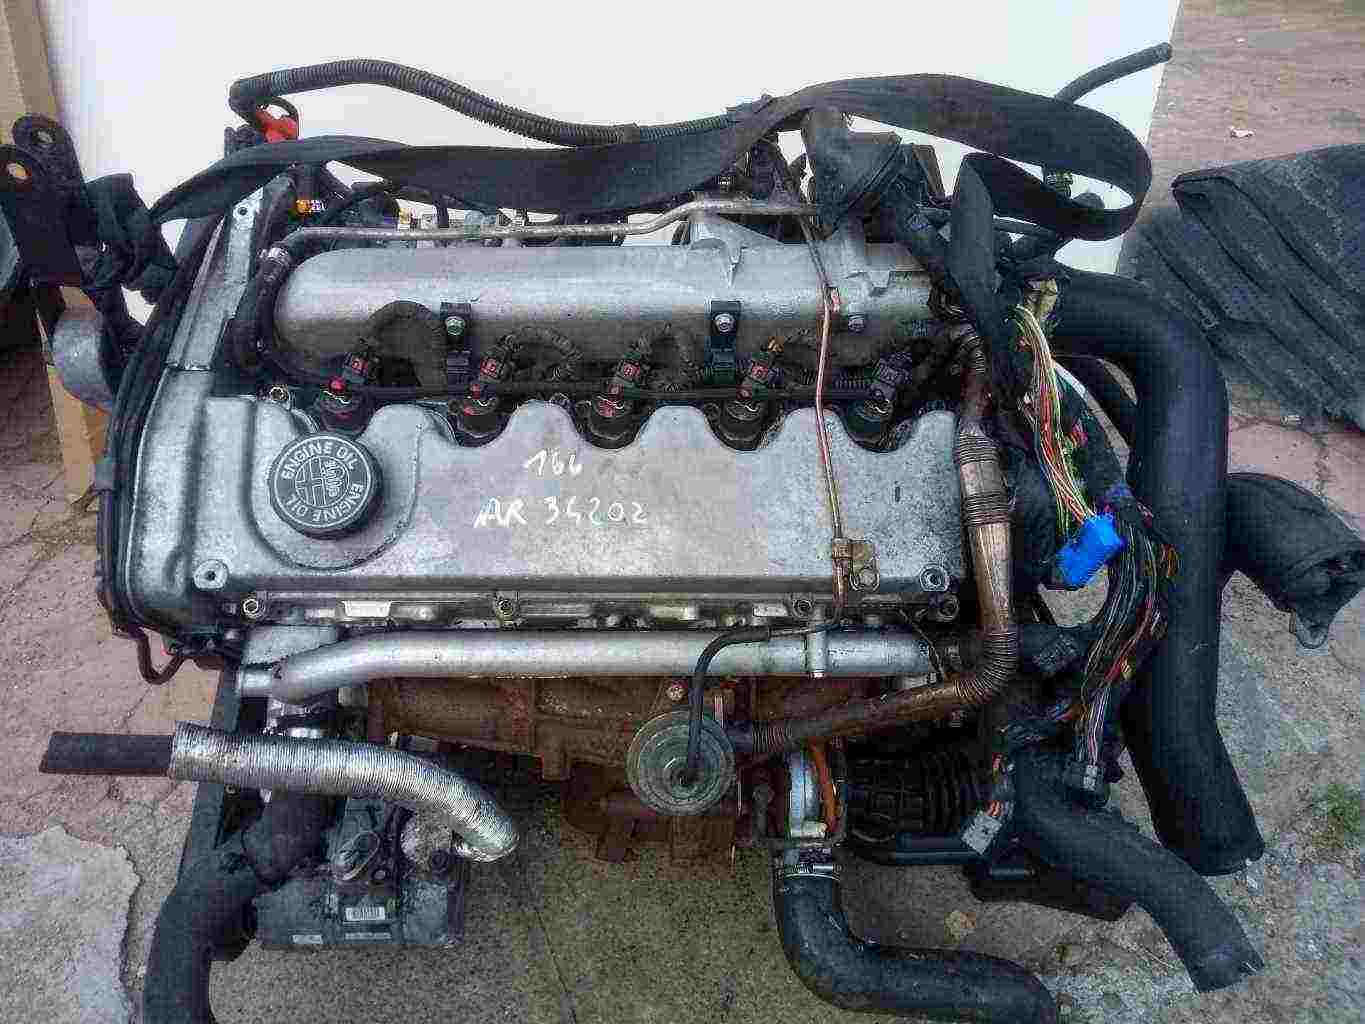 Motore Alfa Romeo 166 2.4 JTD AR34202